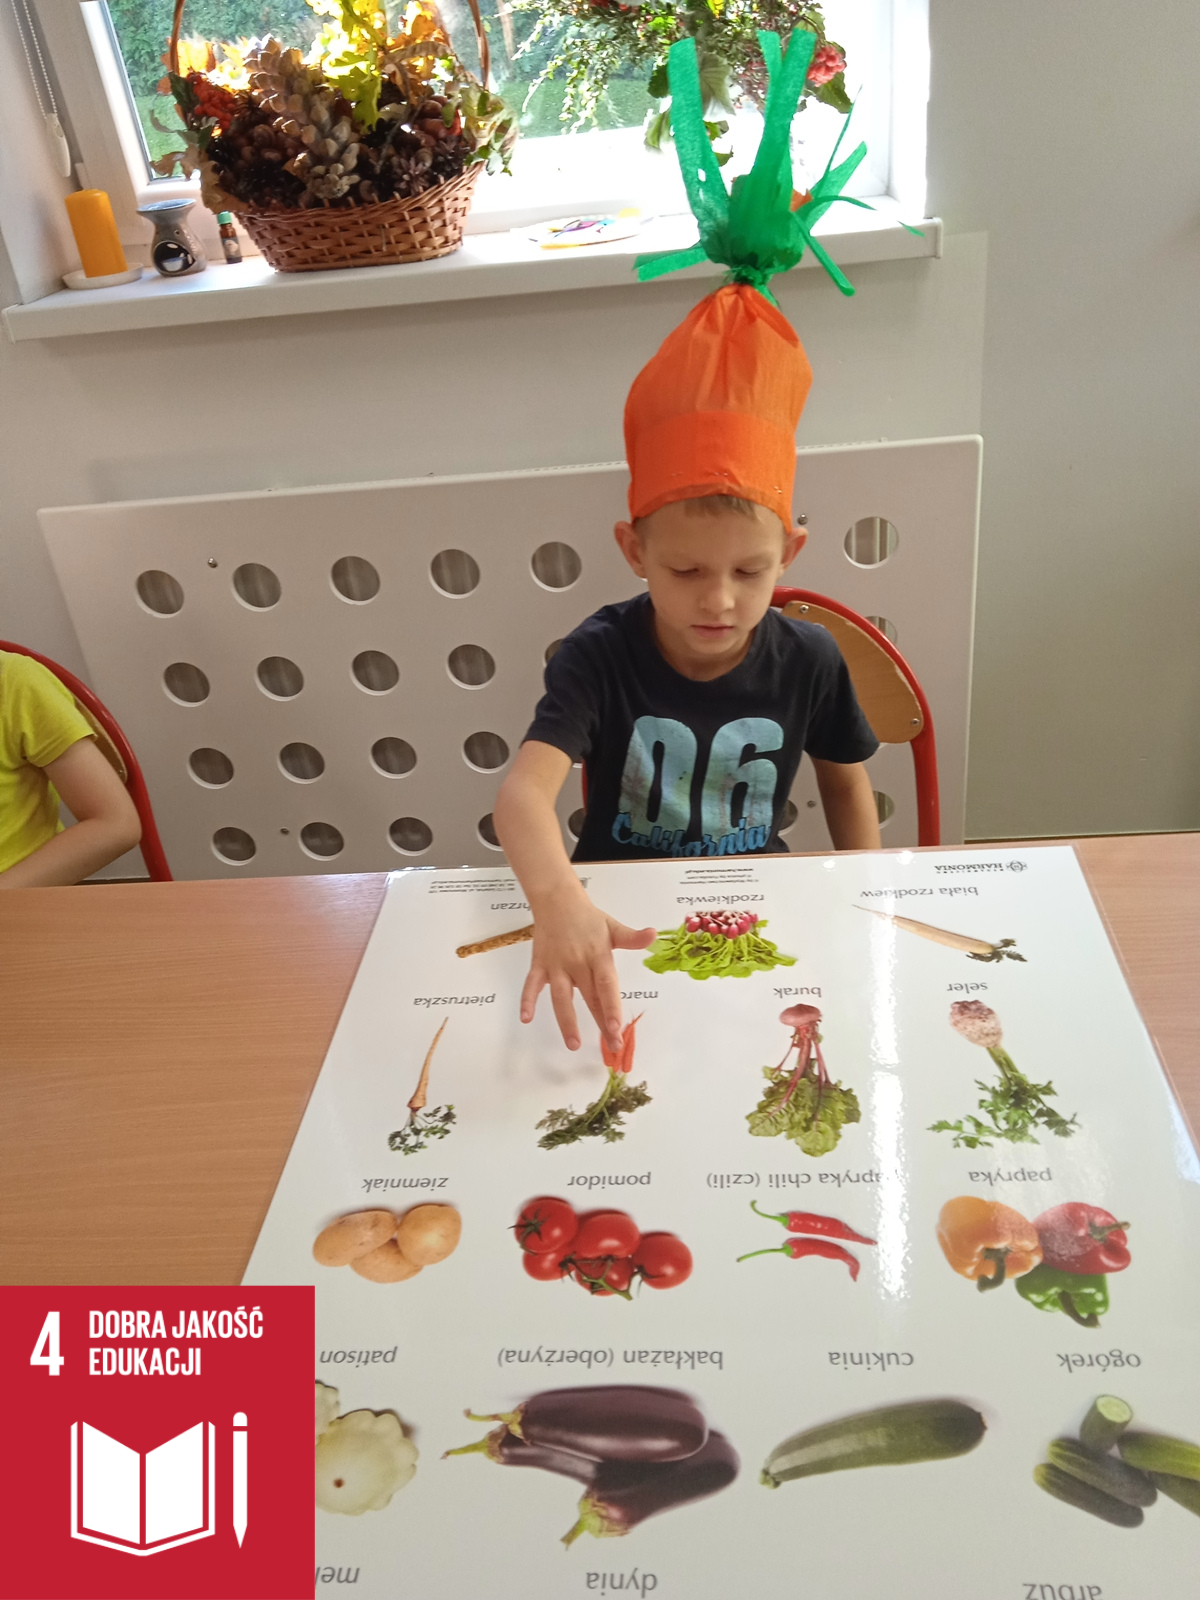 Na zdjęciu wychowanek pokazuje na planszy marchewkę